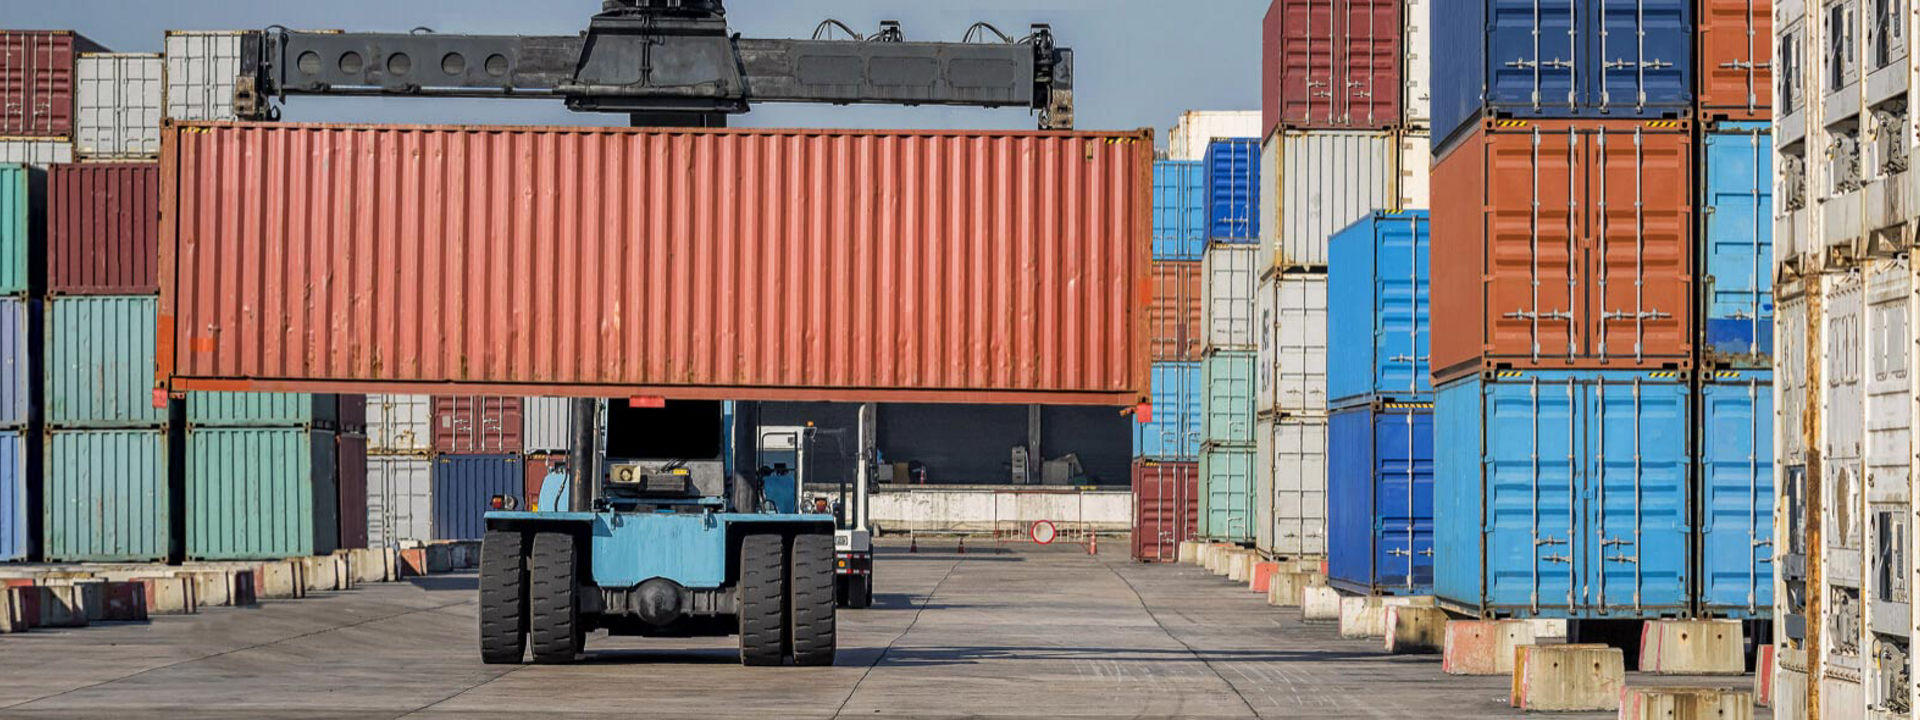 En gaffeltruck udstyret med Bridgestone terrængående dæk flytter skibscontainere på tværs af en stor industrihavn